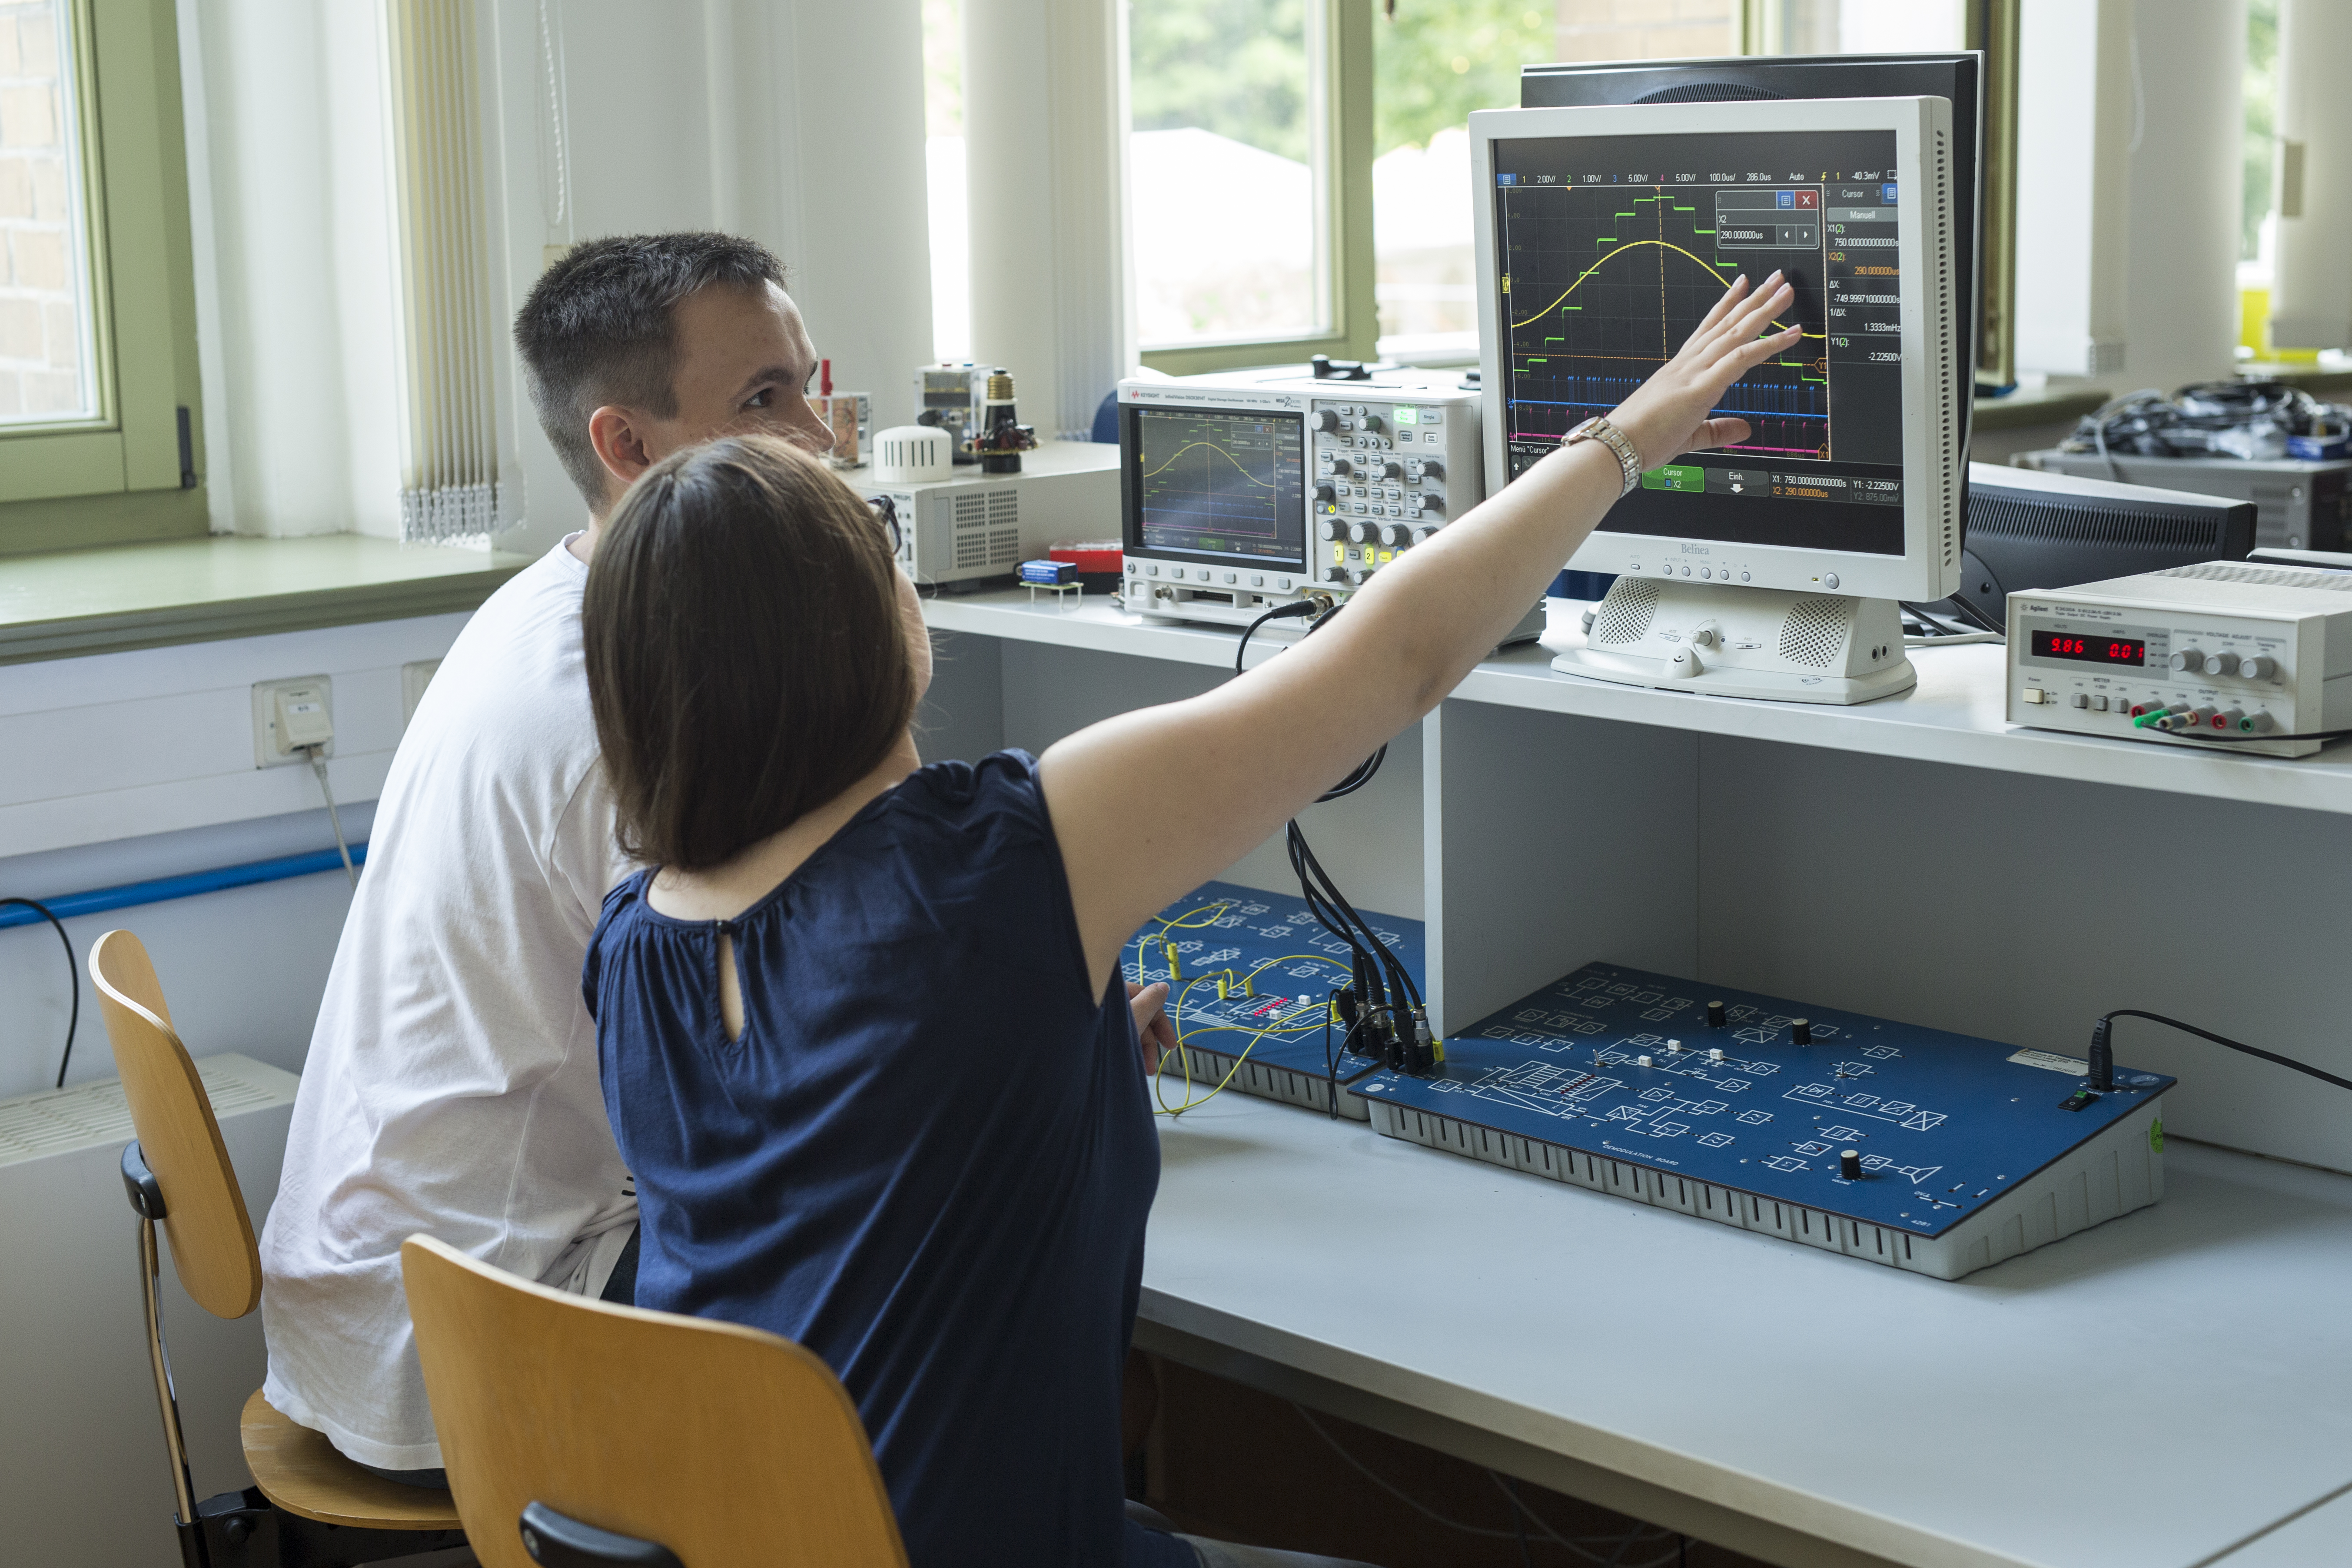 Zwei Studenten sitzen im Labor vor einem Bildschirm, eine Studentin zeigt auf den Bildschirm. Darauf sieht man die Digitalisierung eines analogen Signals.